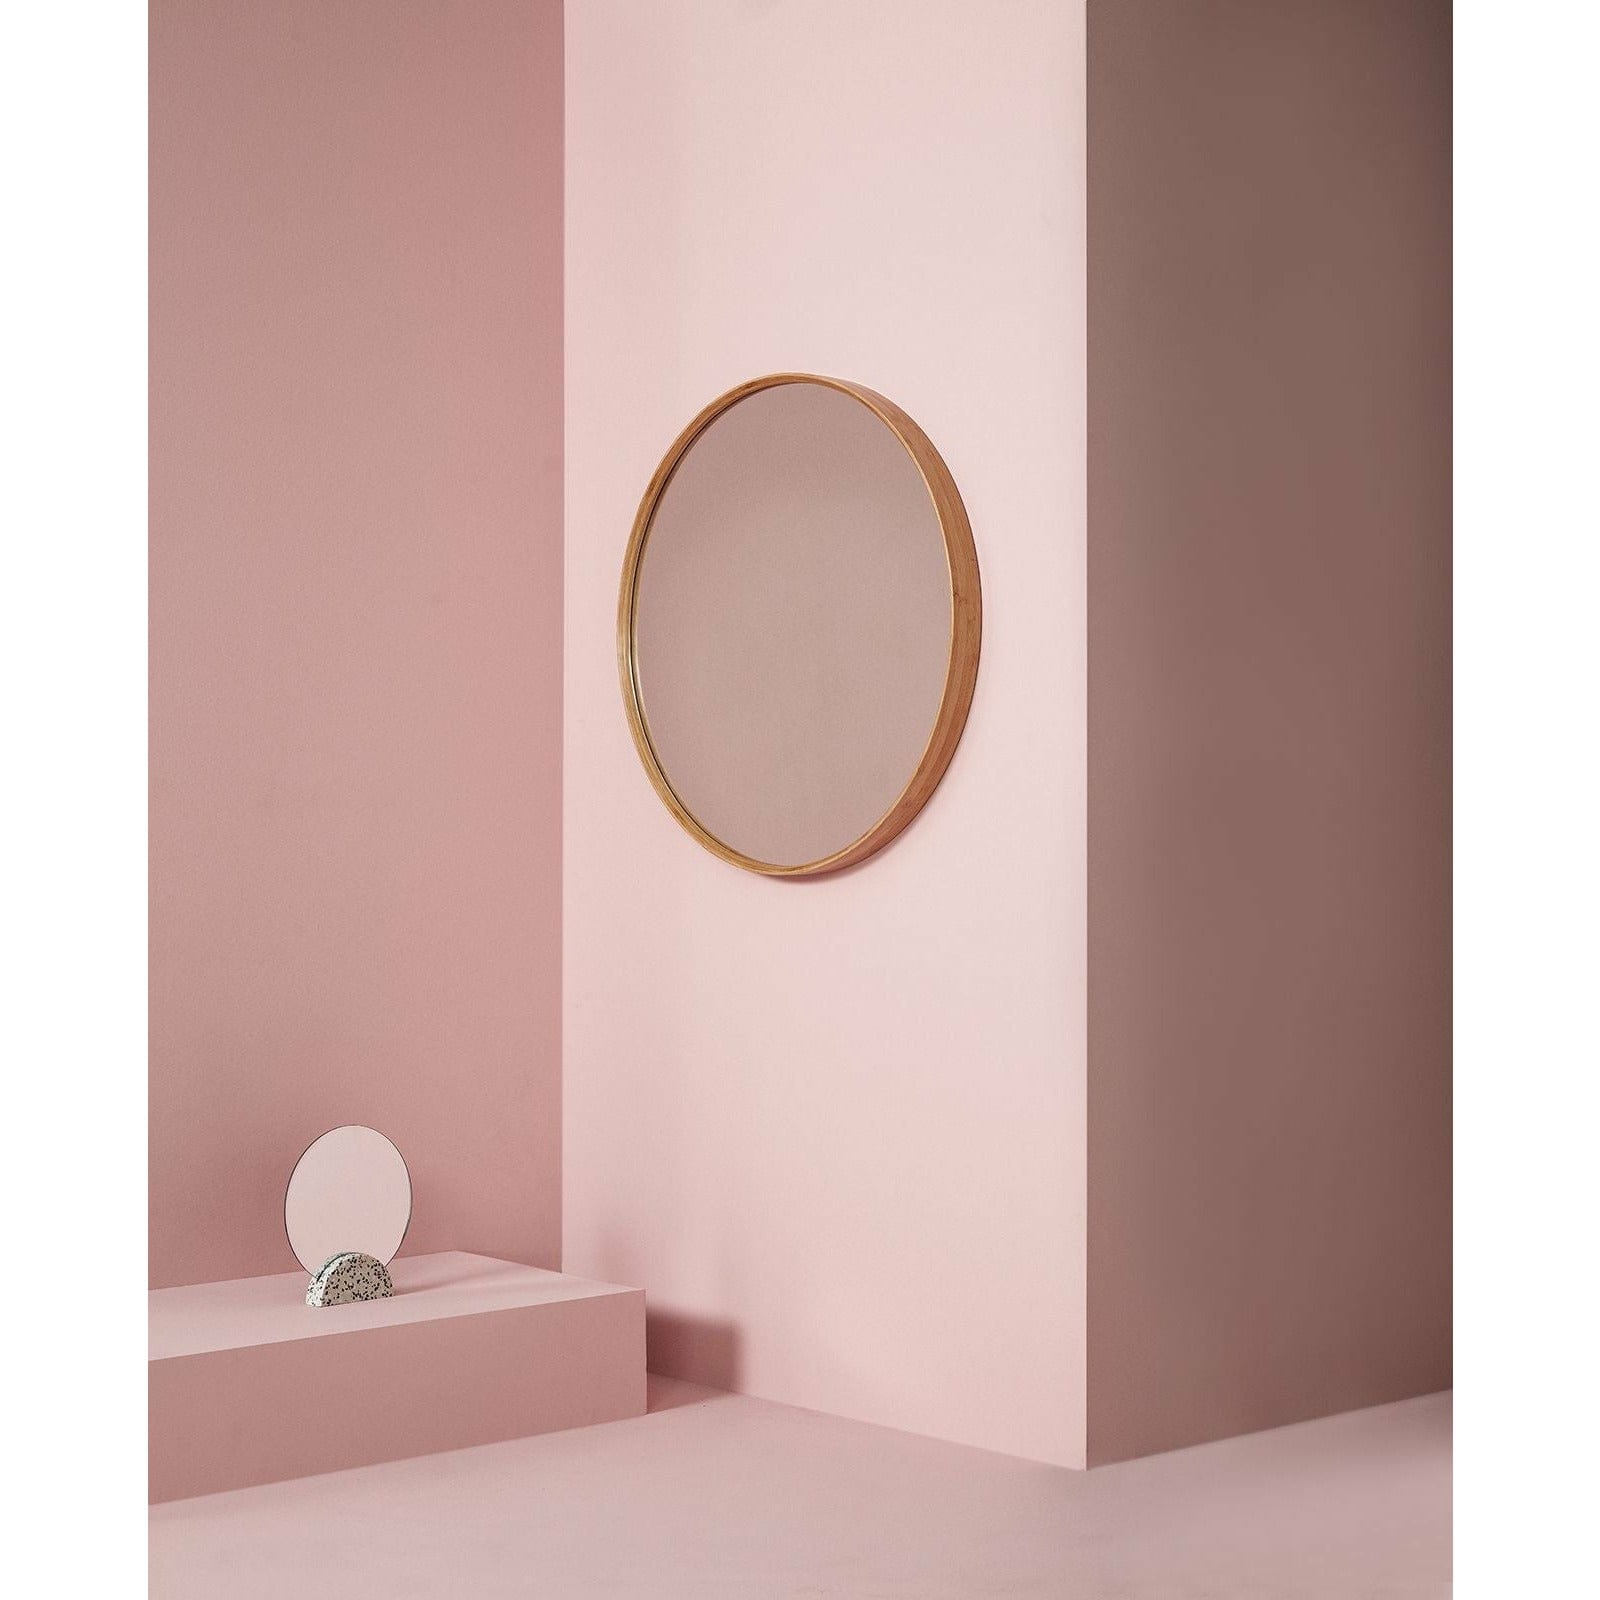 Hübsch Reflect Wall Mirror M/Wooden Frame Natural